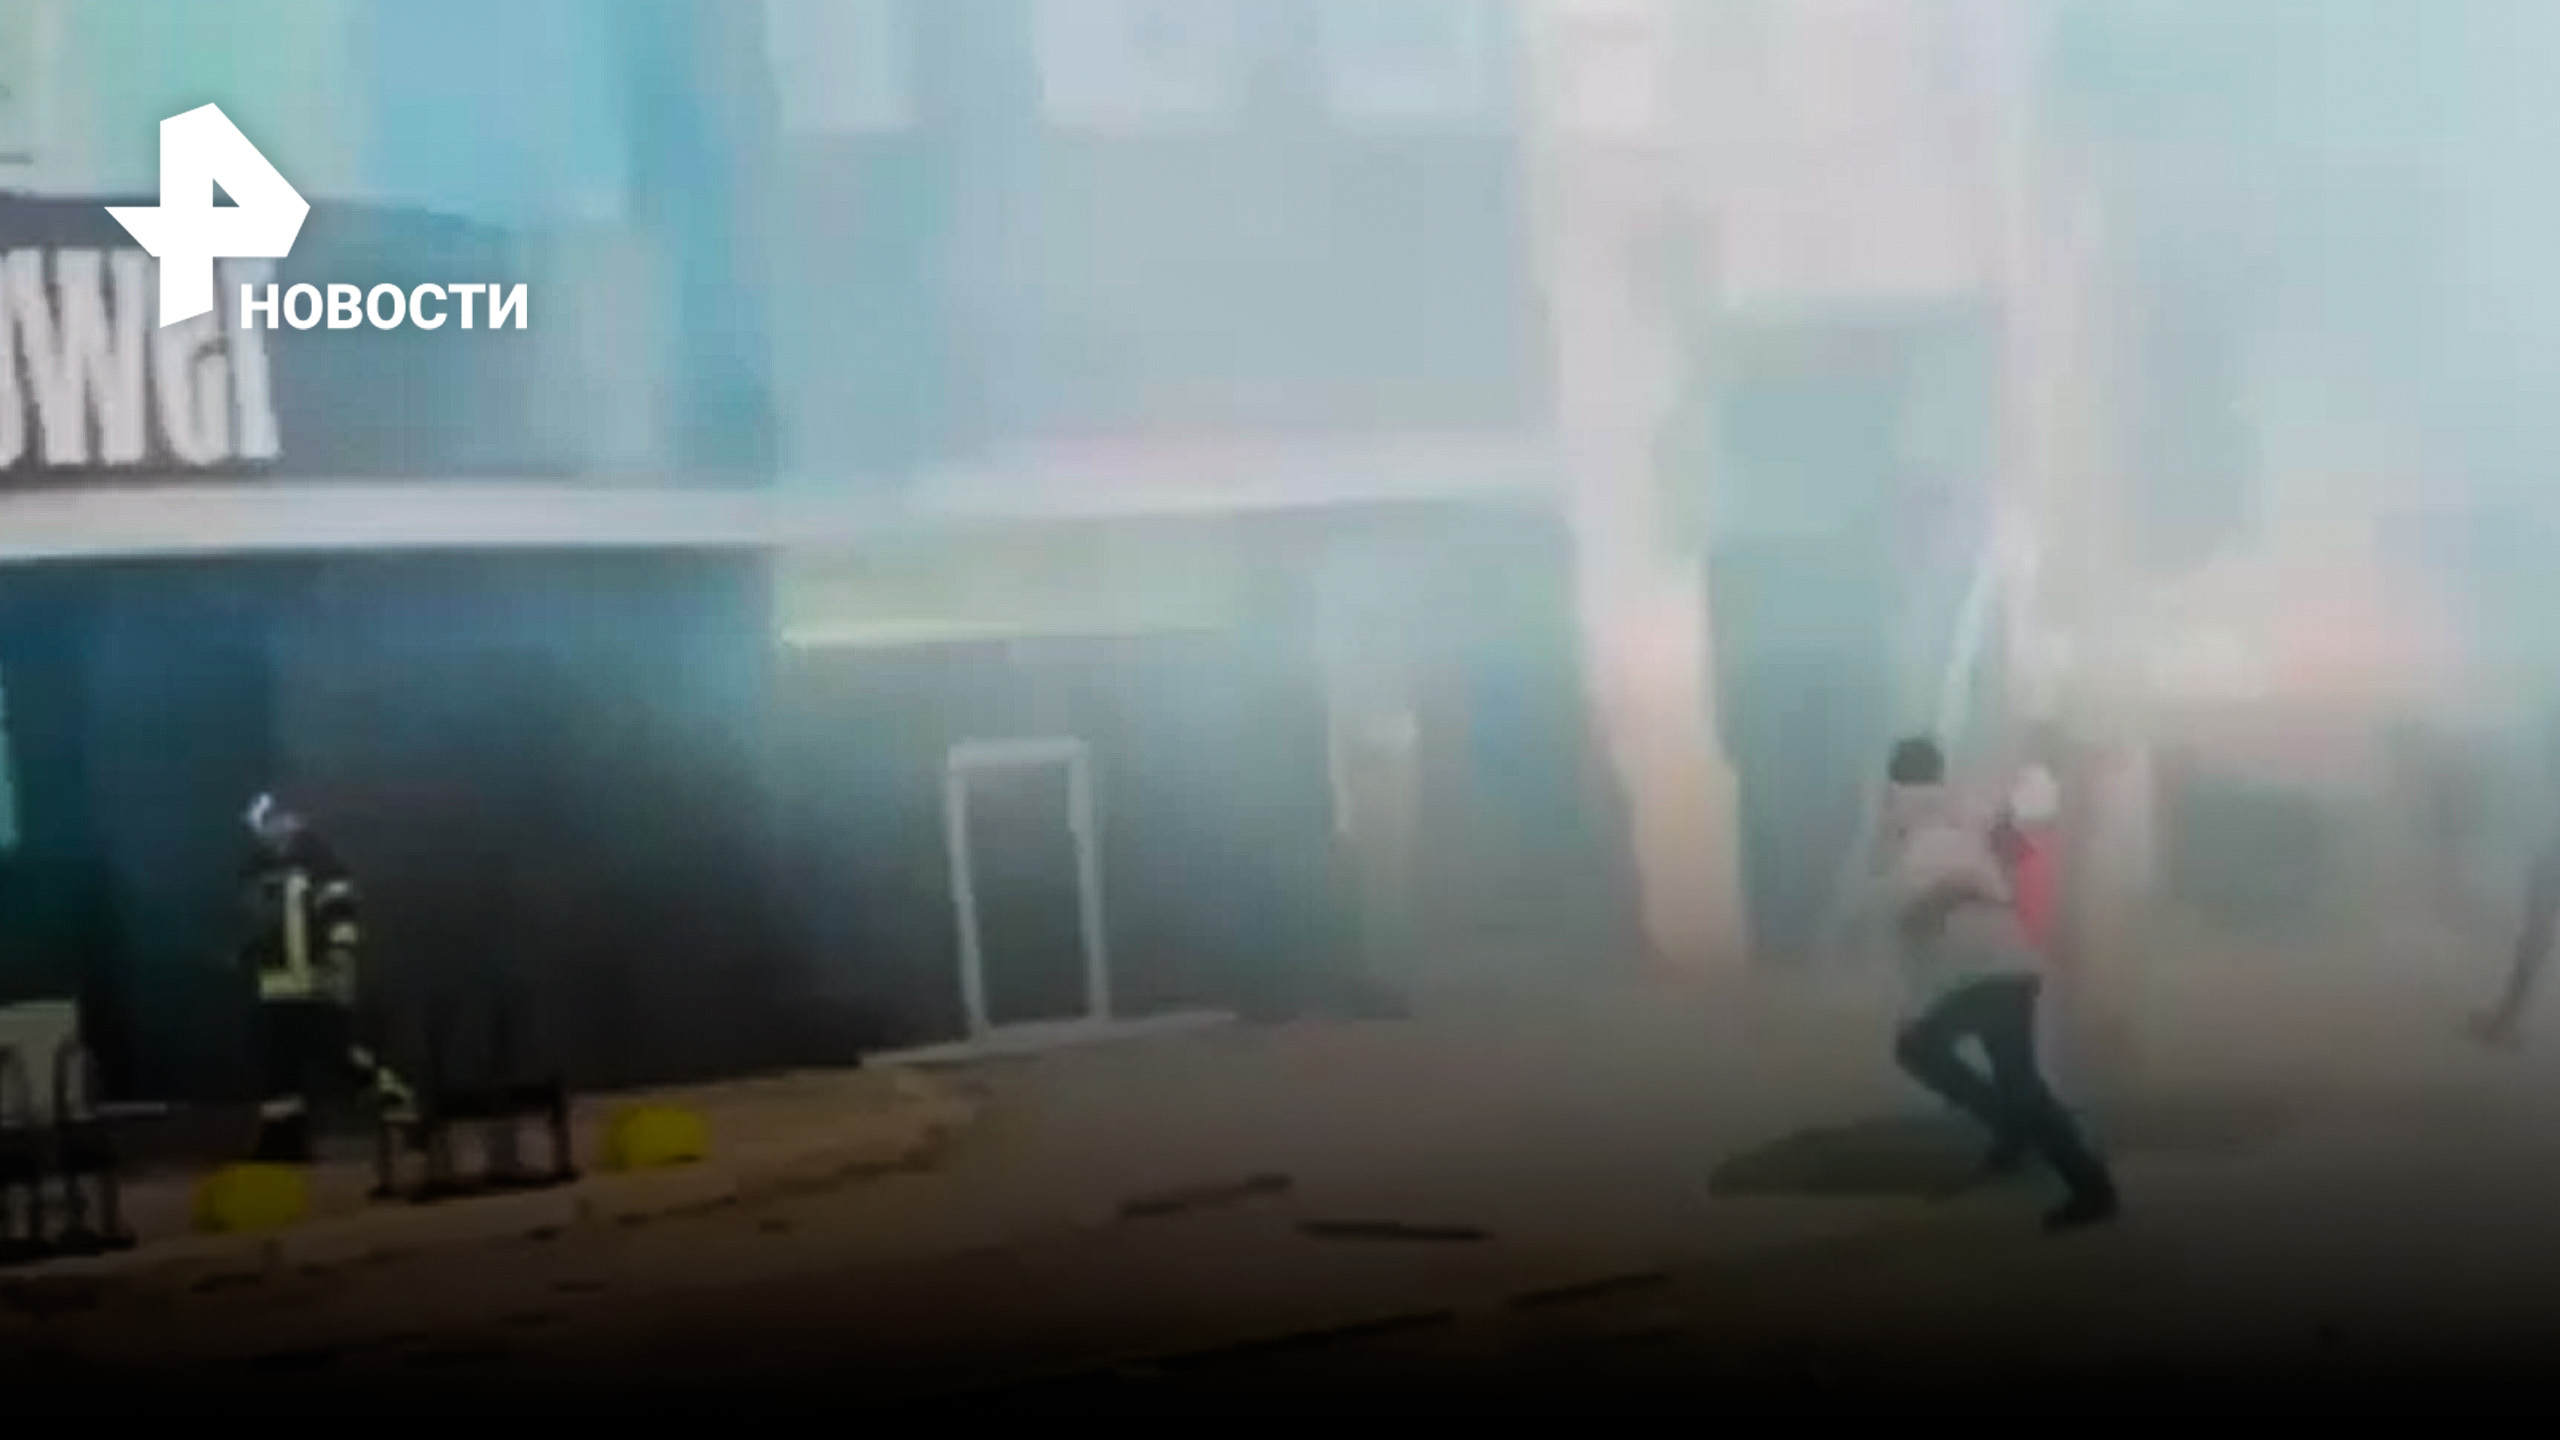 Обломки, дым, уничтоженные машины - центр Киева после взрывов / РЕН Новости